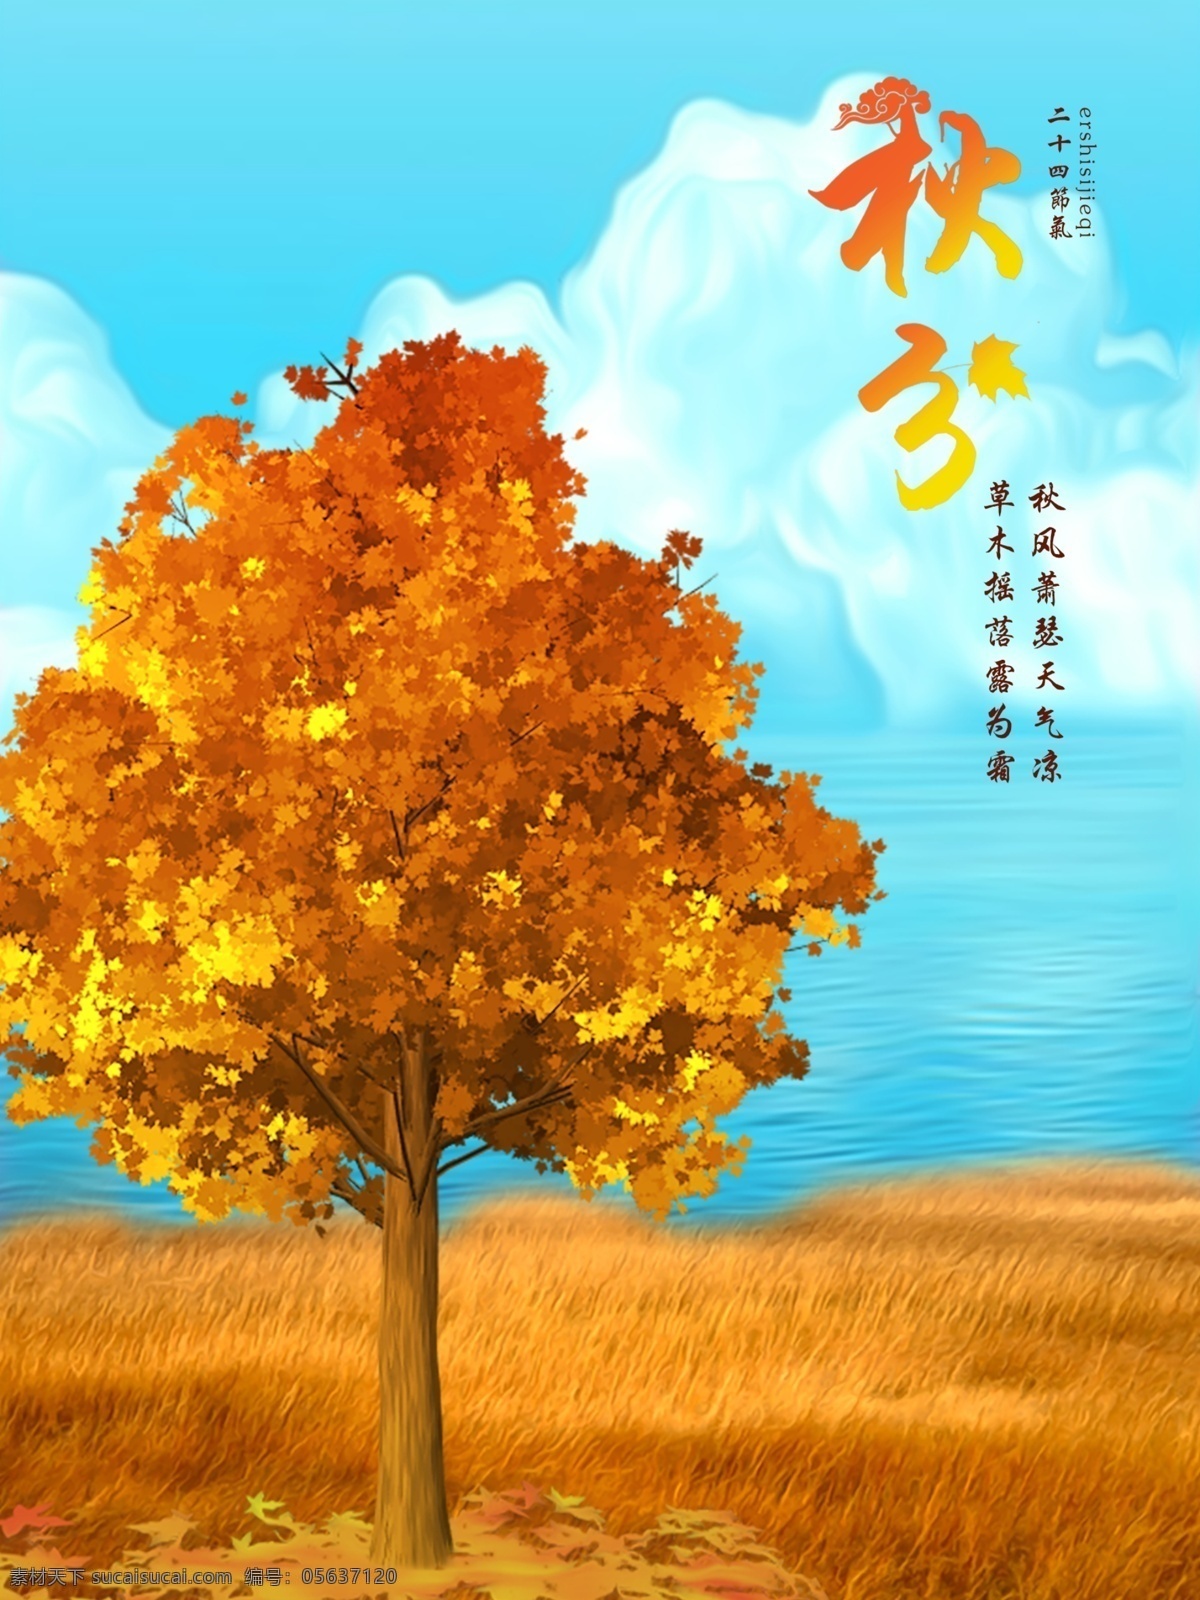 二十四节气 之秋 分 节气 海报 传统节日 落叶 蓝色 橙色 秋分 树